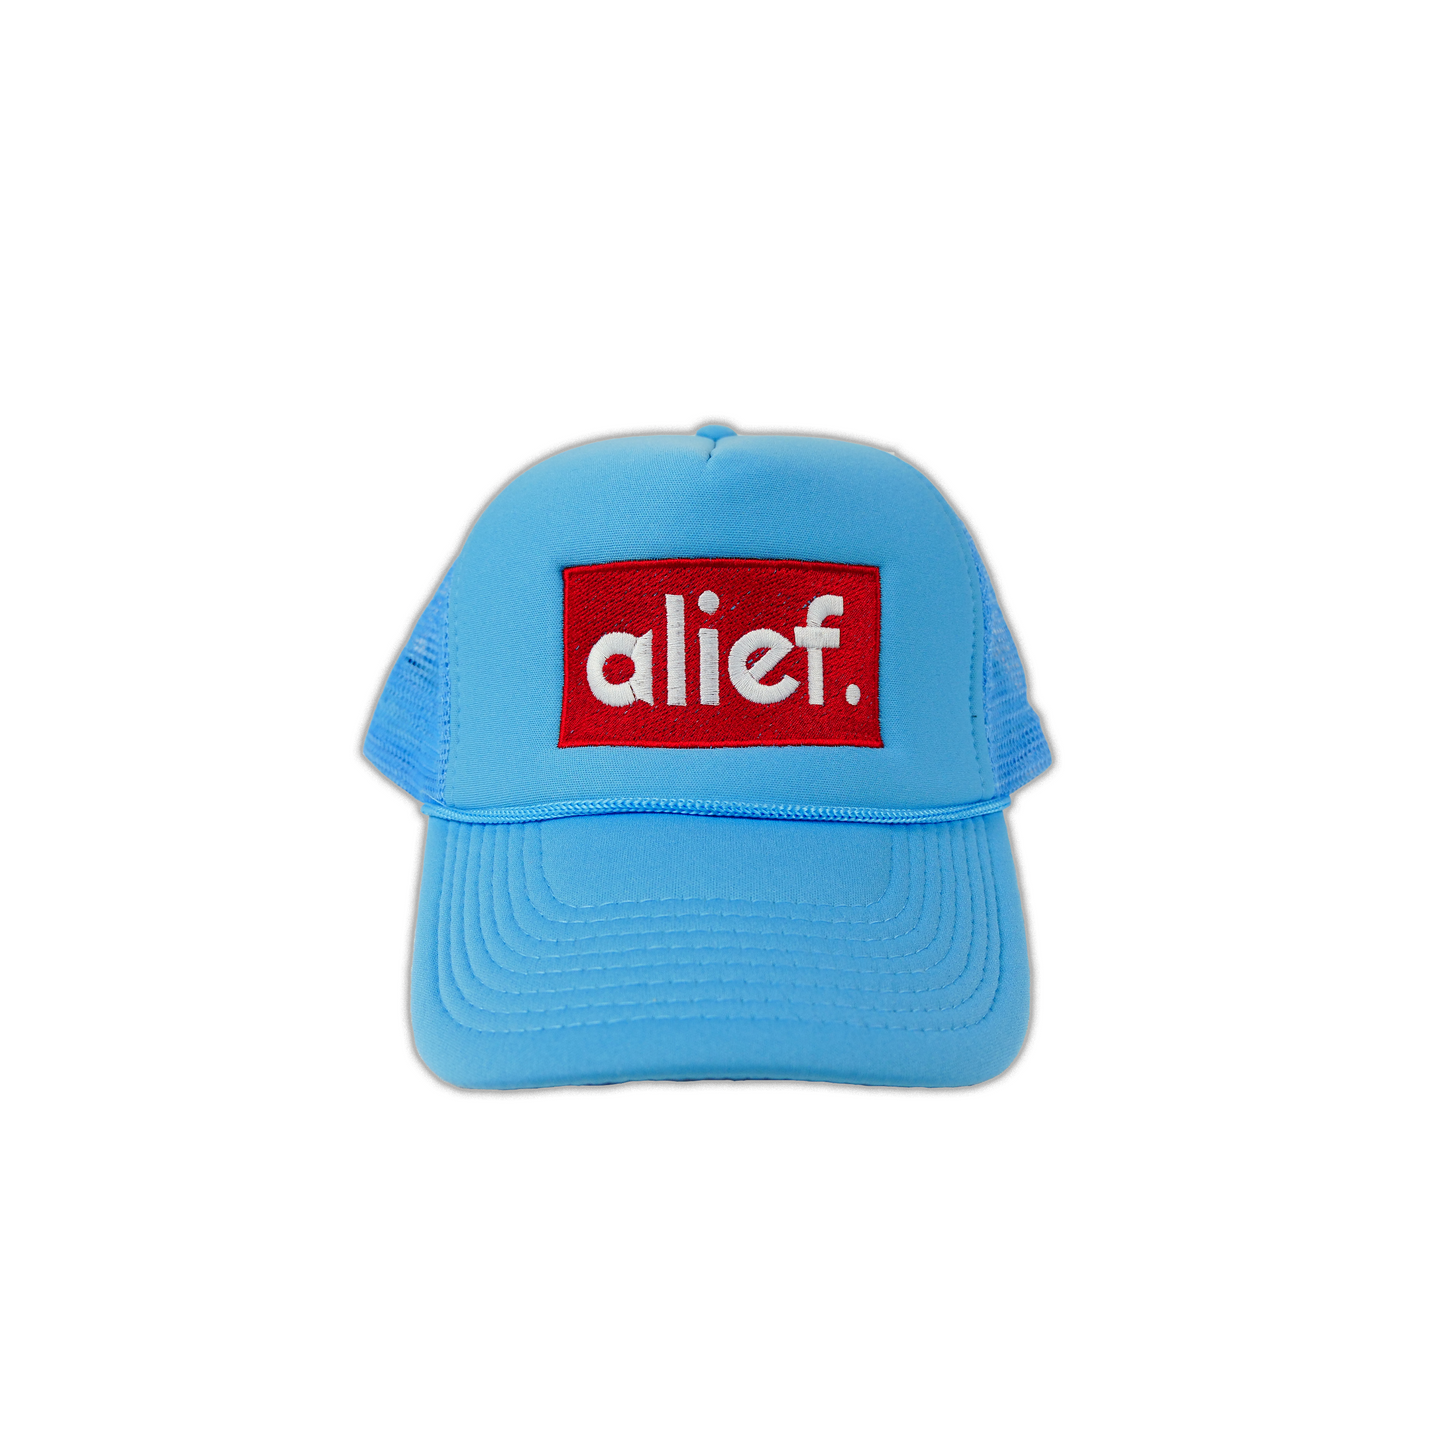 Alief Red Box Trucker Hat - Sky Blue